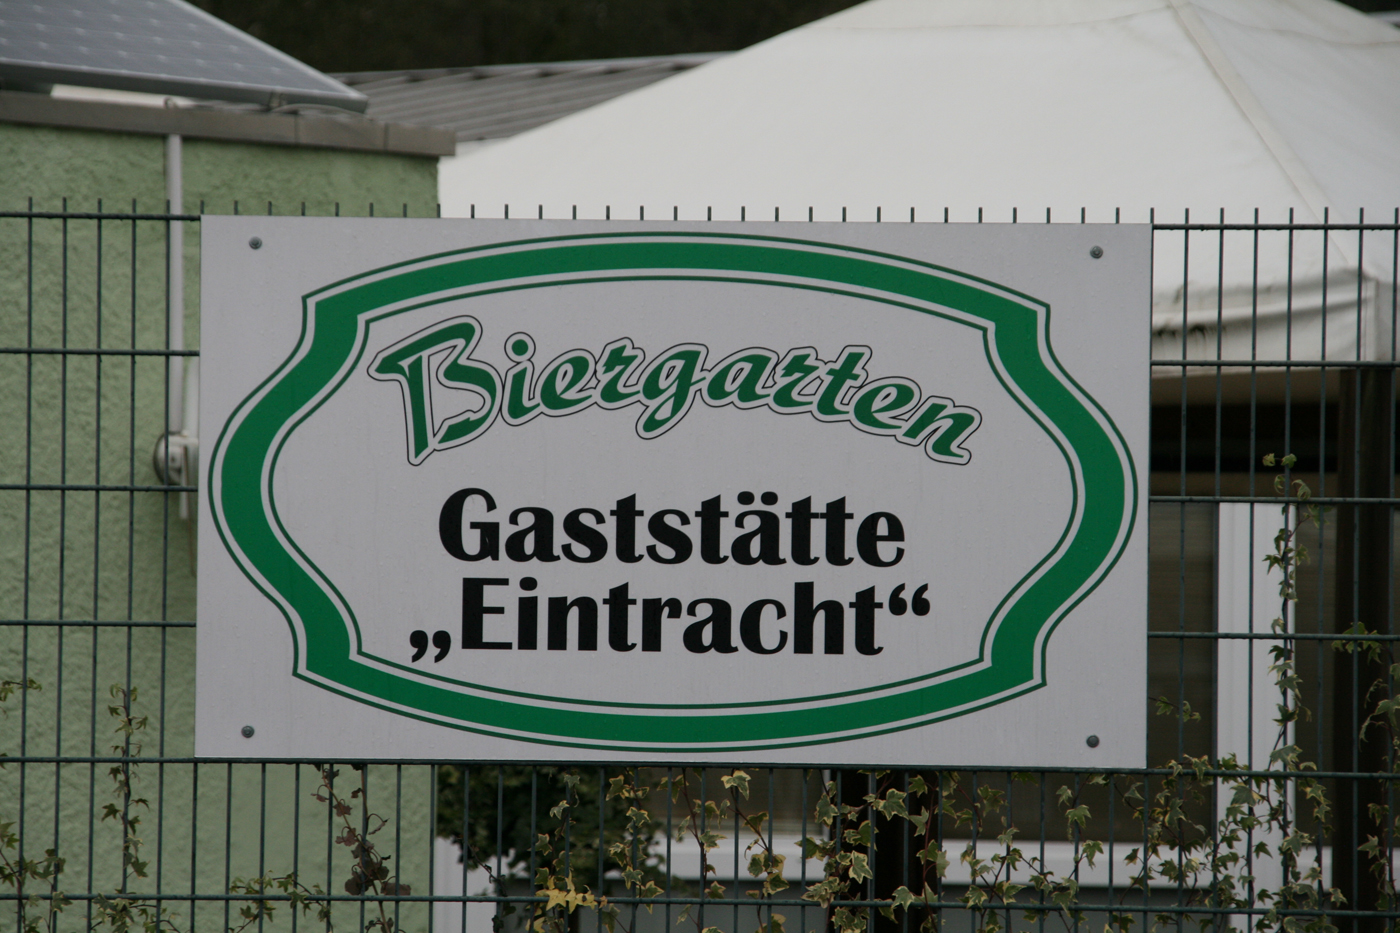 Restaurant Rüsselsheim - Balkan Spezialitäten - Gaststätte Eintracht - Bild23